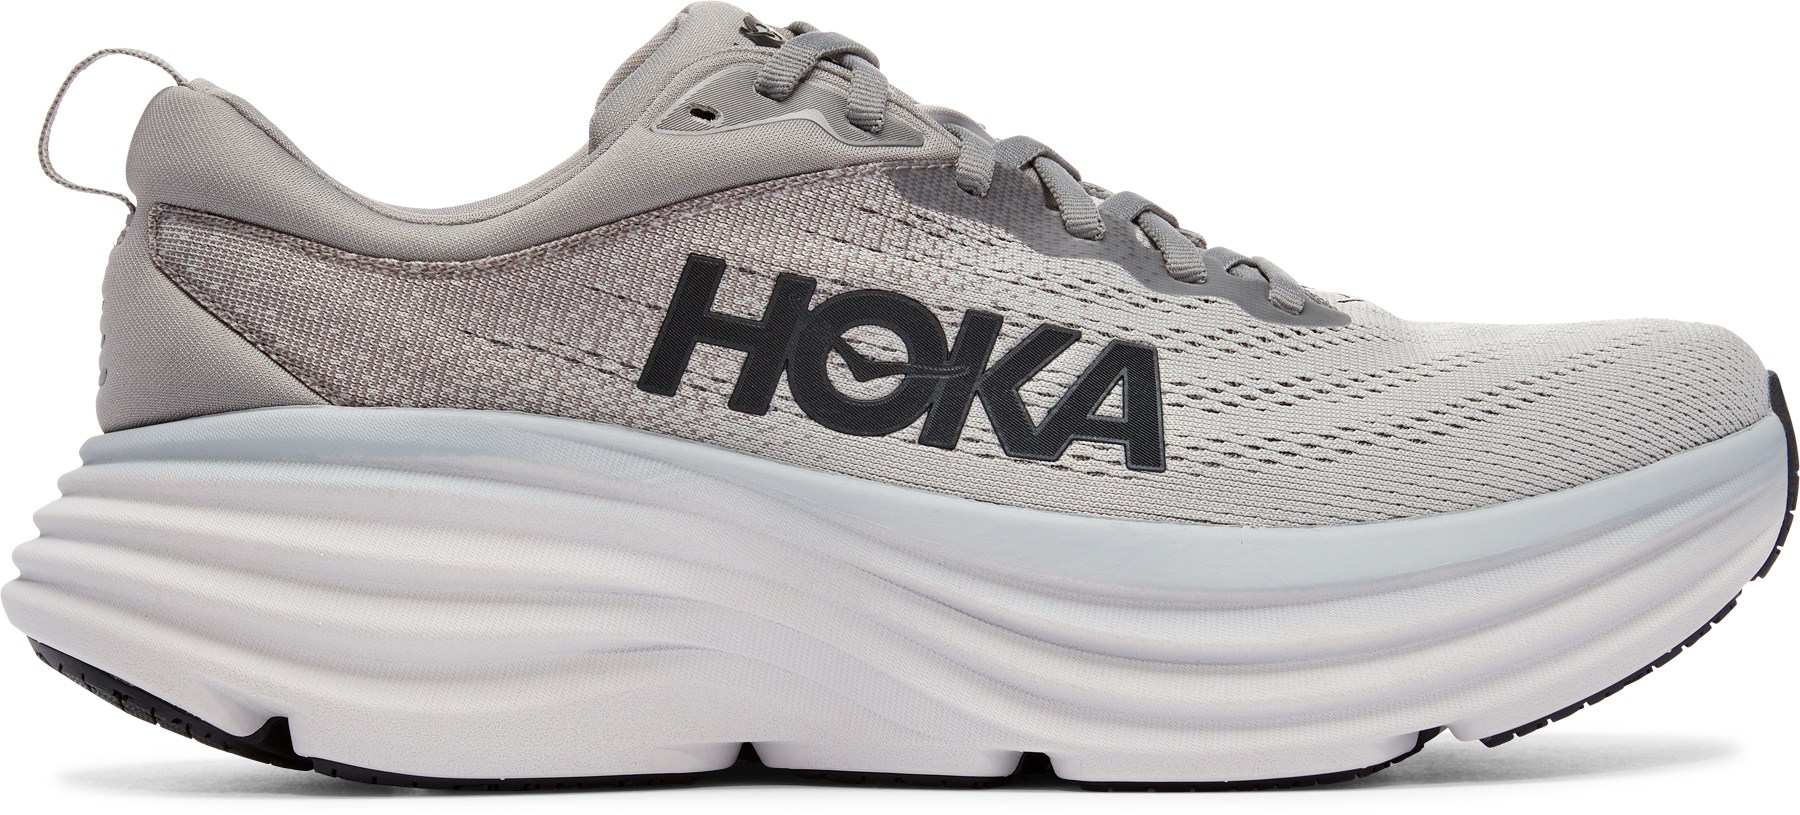 Кроссовки для шоссейного бега Bondi 8 – мужские HOKA, серый